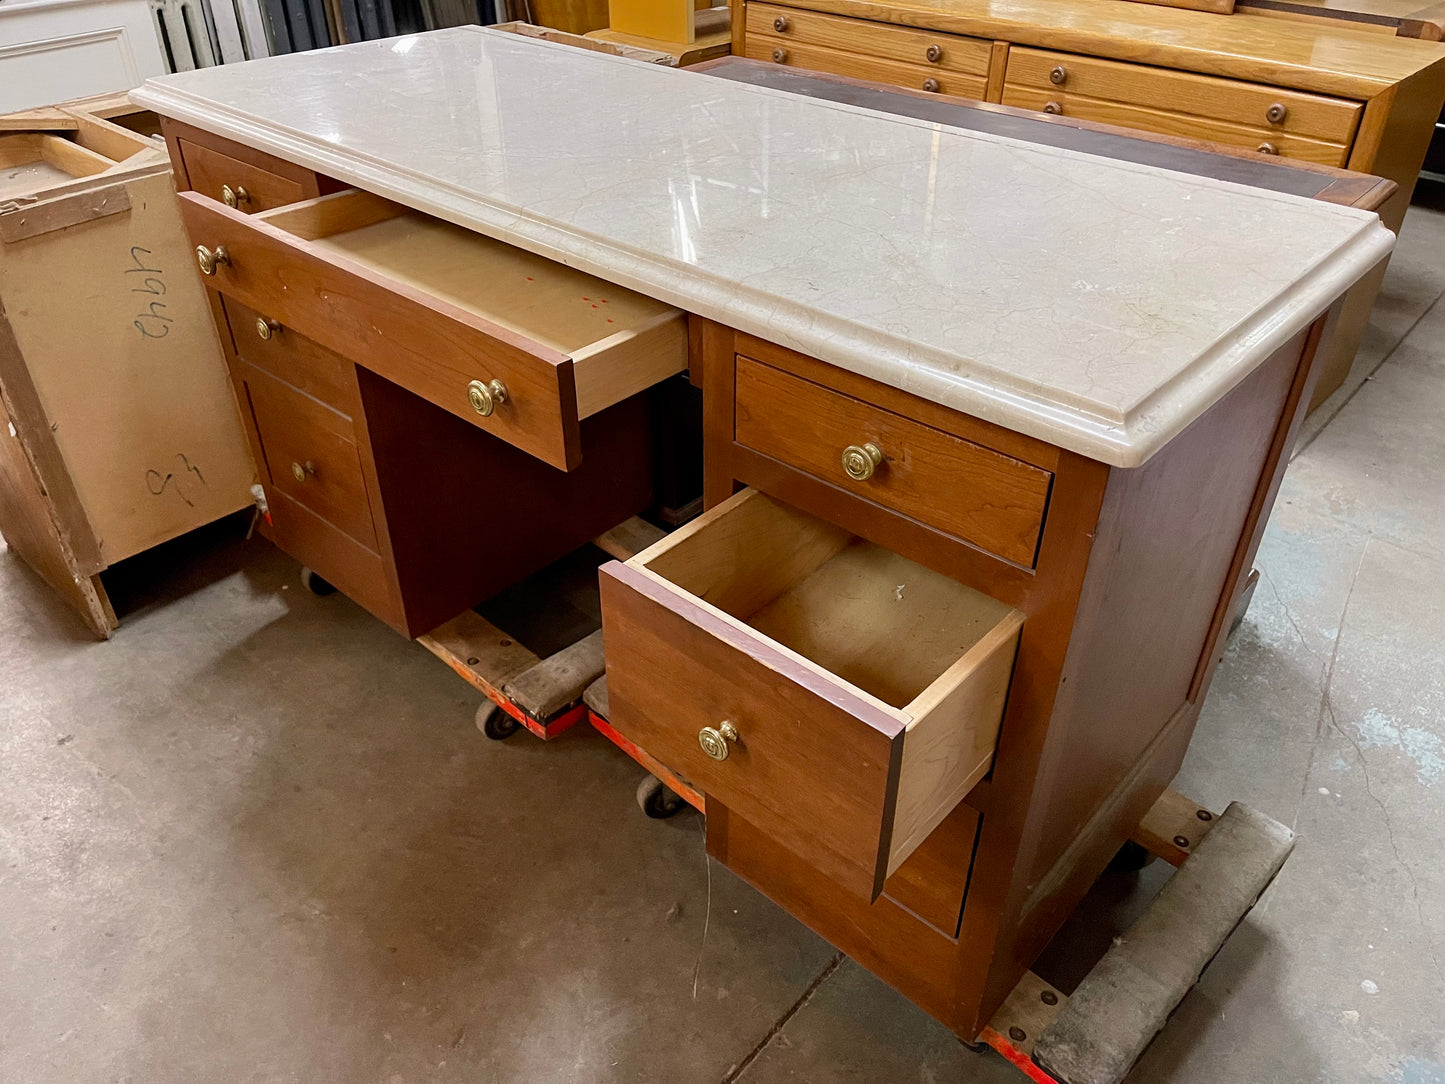 3 pc Desk with Granite Top